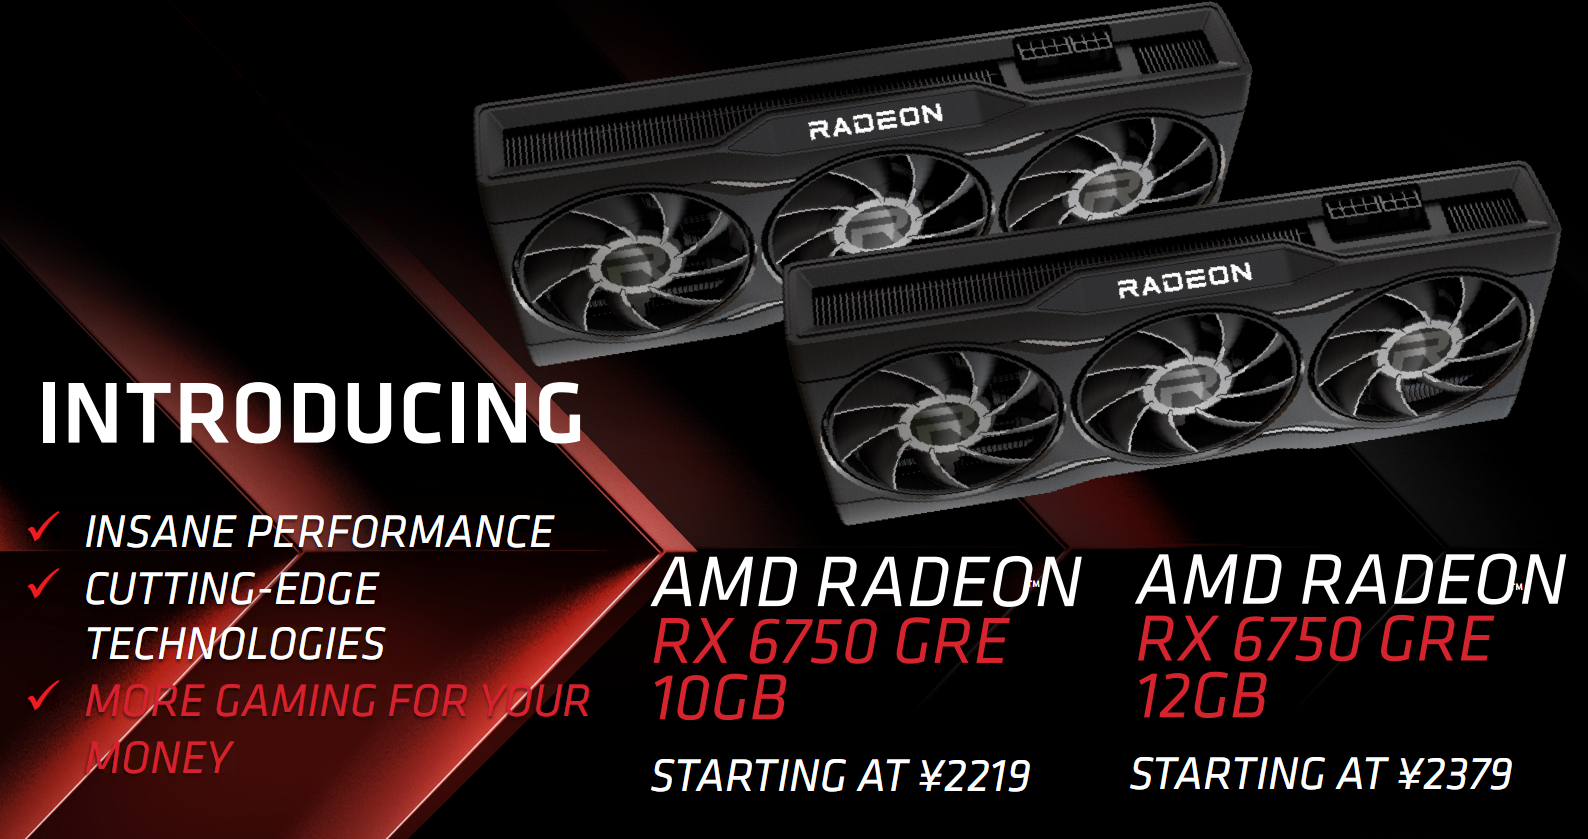 قیمت پردازنده گرافیکی Radeon RX 6750 GRE AMD در چین به پایین ترین حد خود رسید و عرضه را با مشکل مواجه کرد.